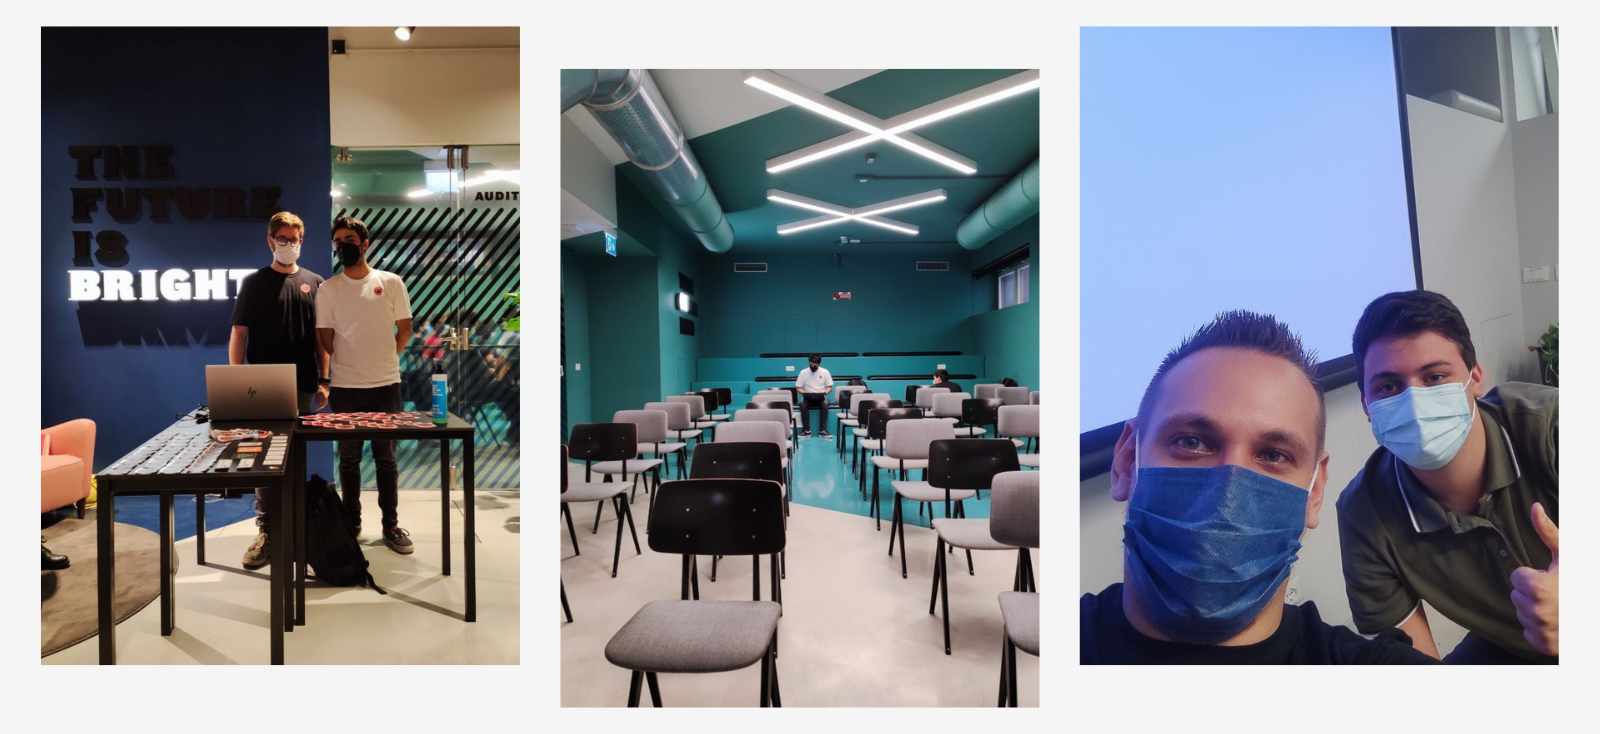 Un collage di tre foto scattate durante l'Open Source Day del 2021 che ritraggono la location dell'evento e il team organizzativo in fase di accoglienza dei partecipanti.